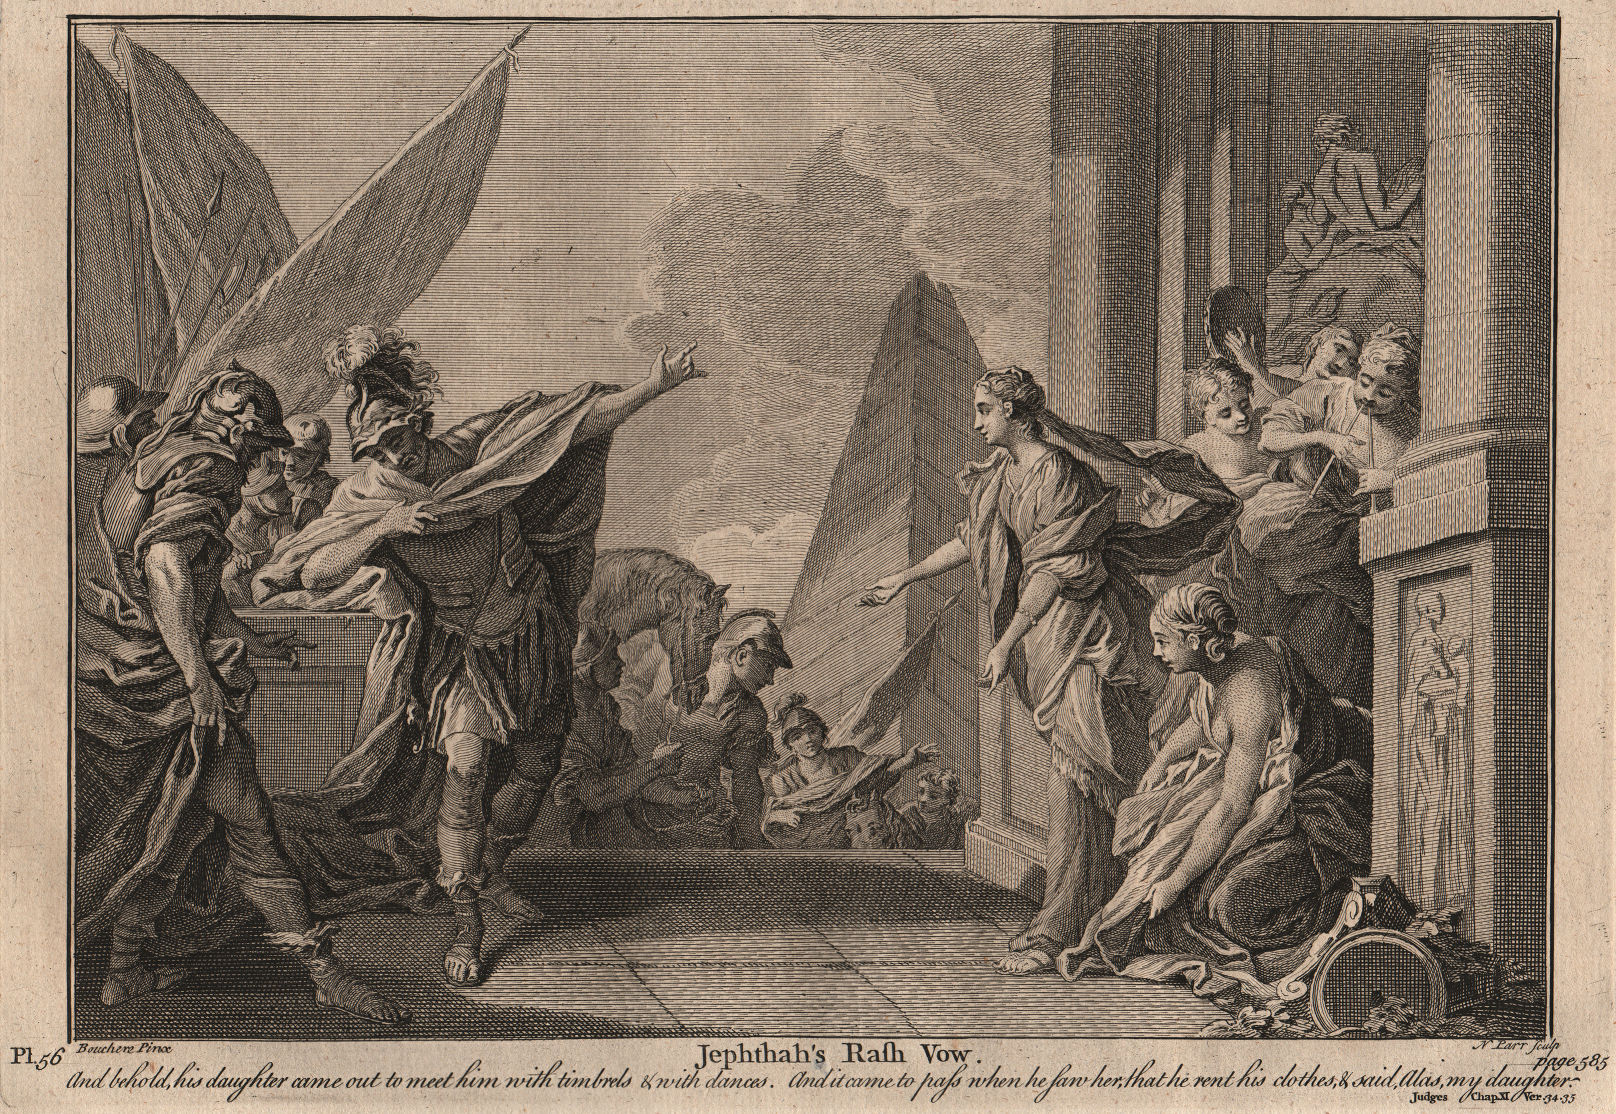 Associate Product BIBLE. Judges 11.34-35 Jephthah's rash vow 1752 old antique print picture